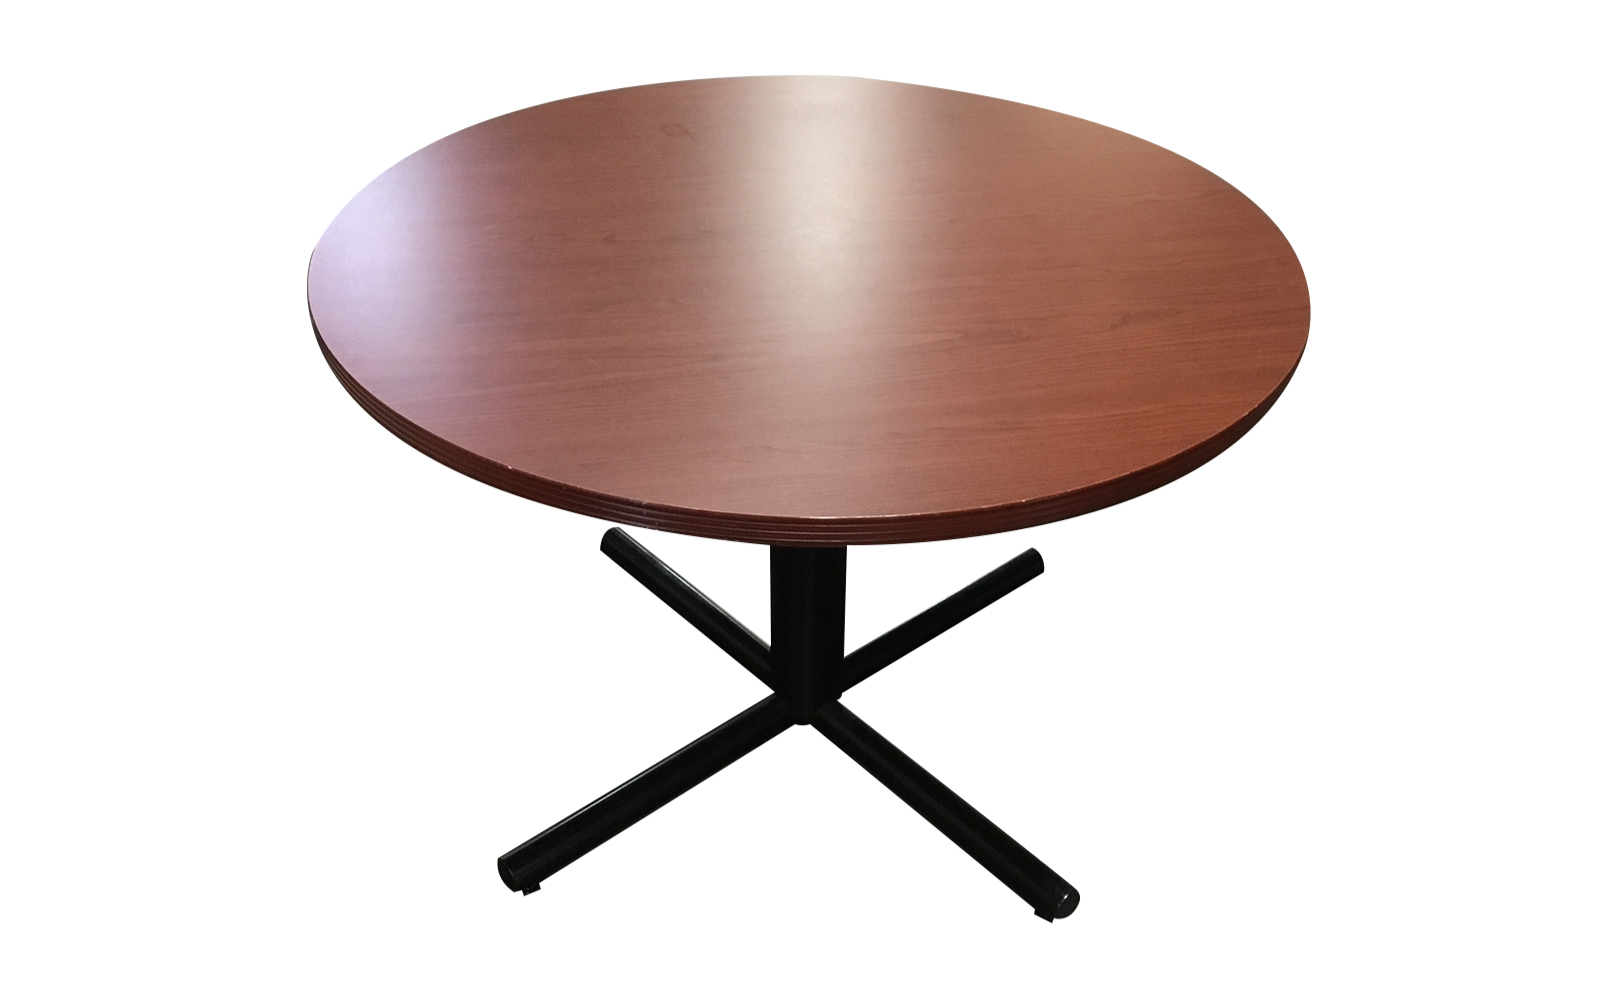 48” ROUND TABLE CHERRY